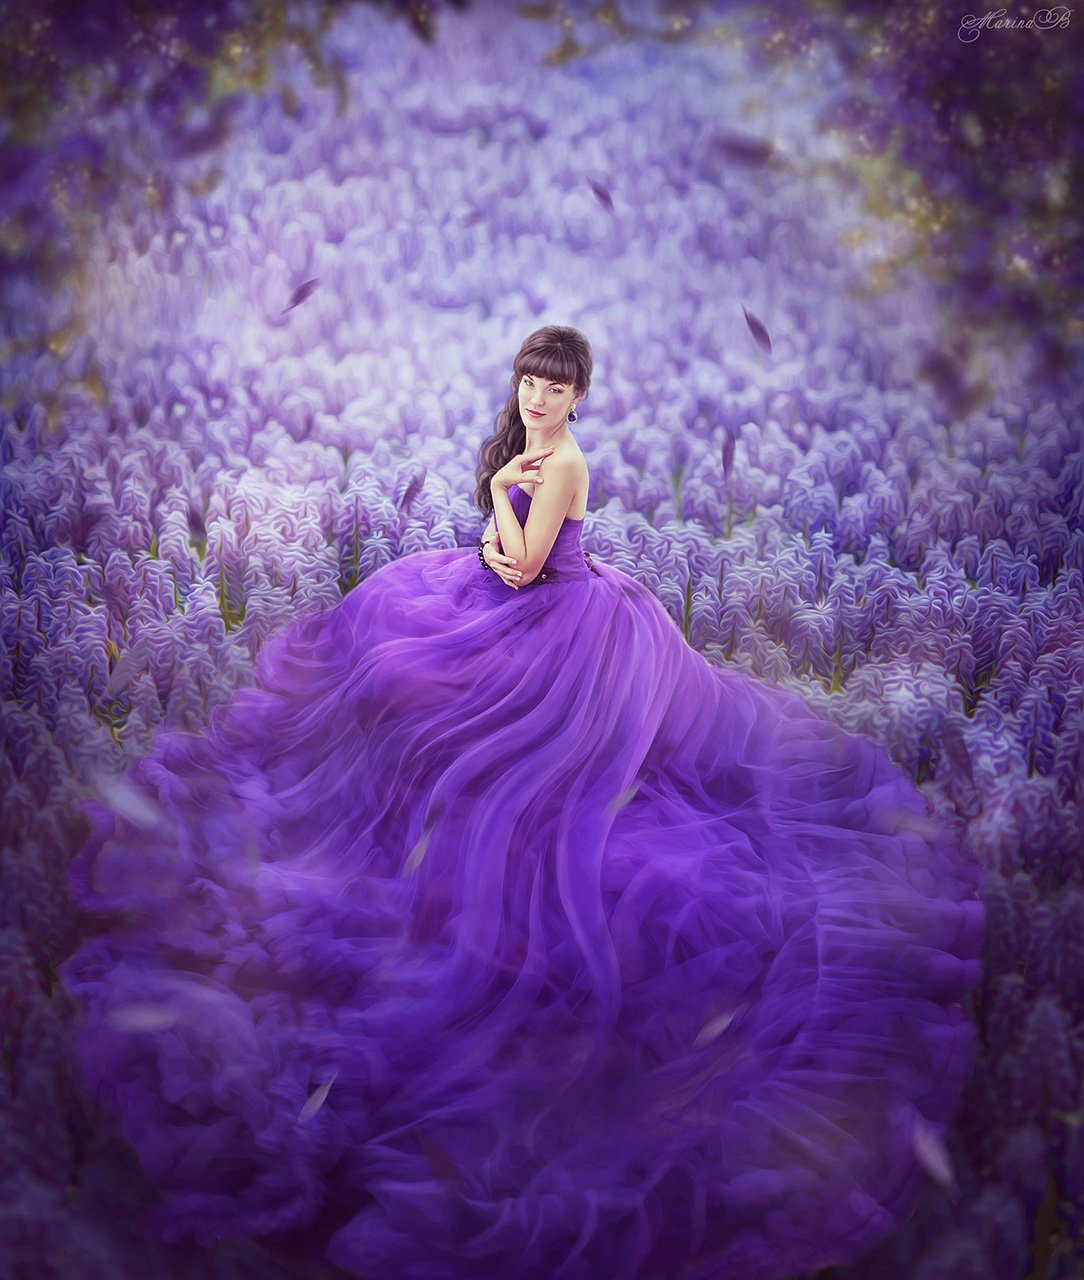 волшебство, фиолетовый, фиолетовое платье, фиолетовые цветы, Marina Baccardi